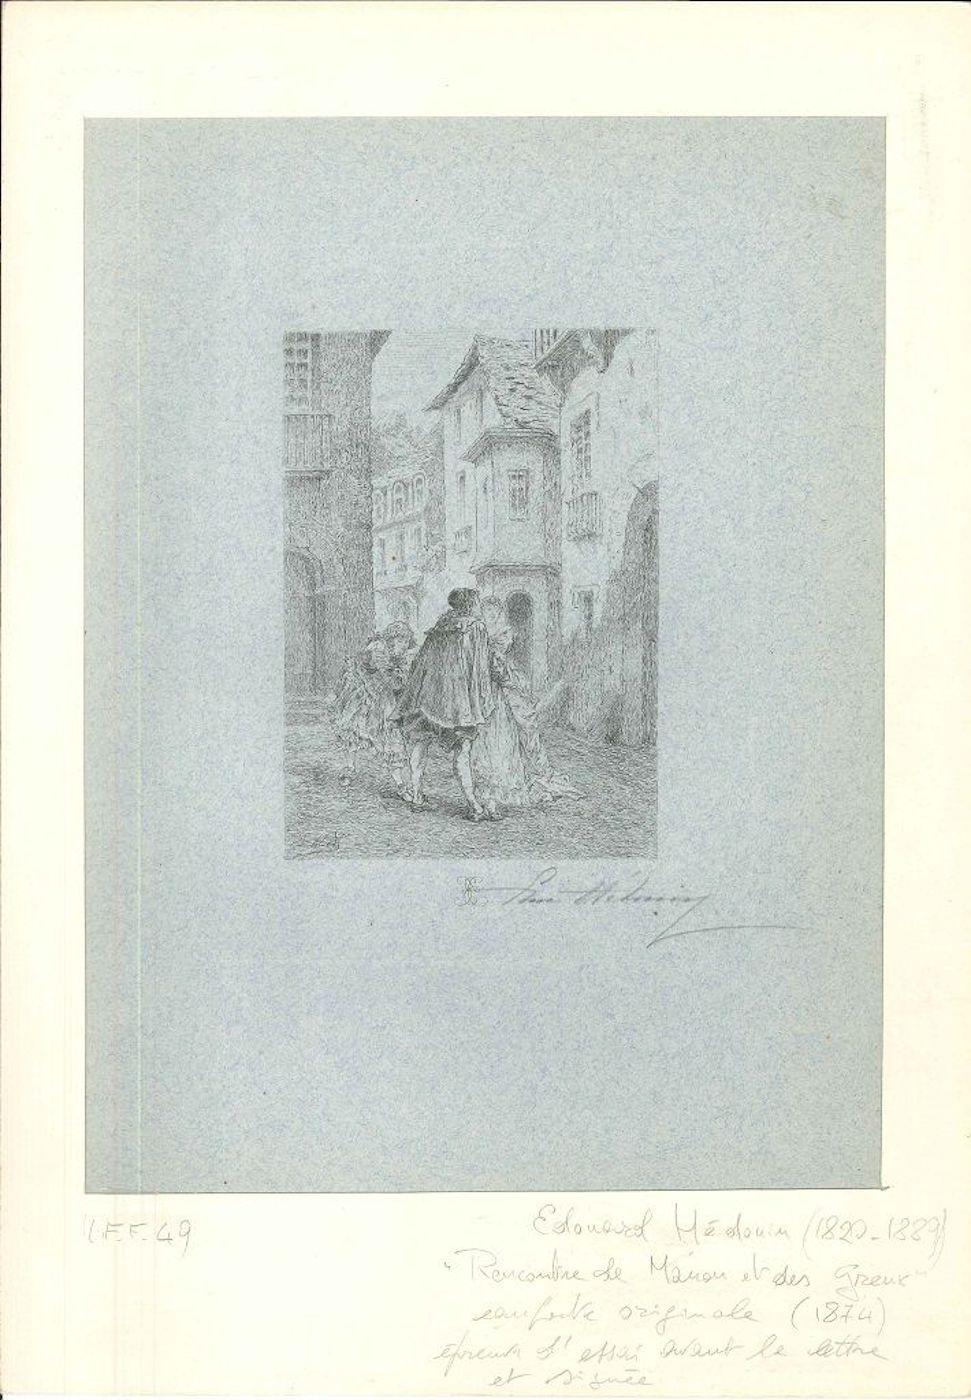 Rencontre de Manon et des Greux -  Etching by Edouard Médouin - 1874